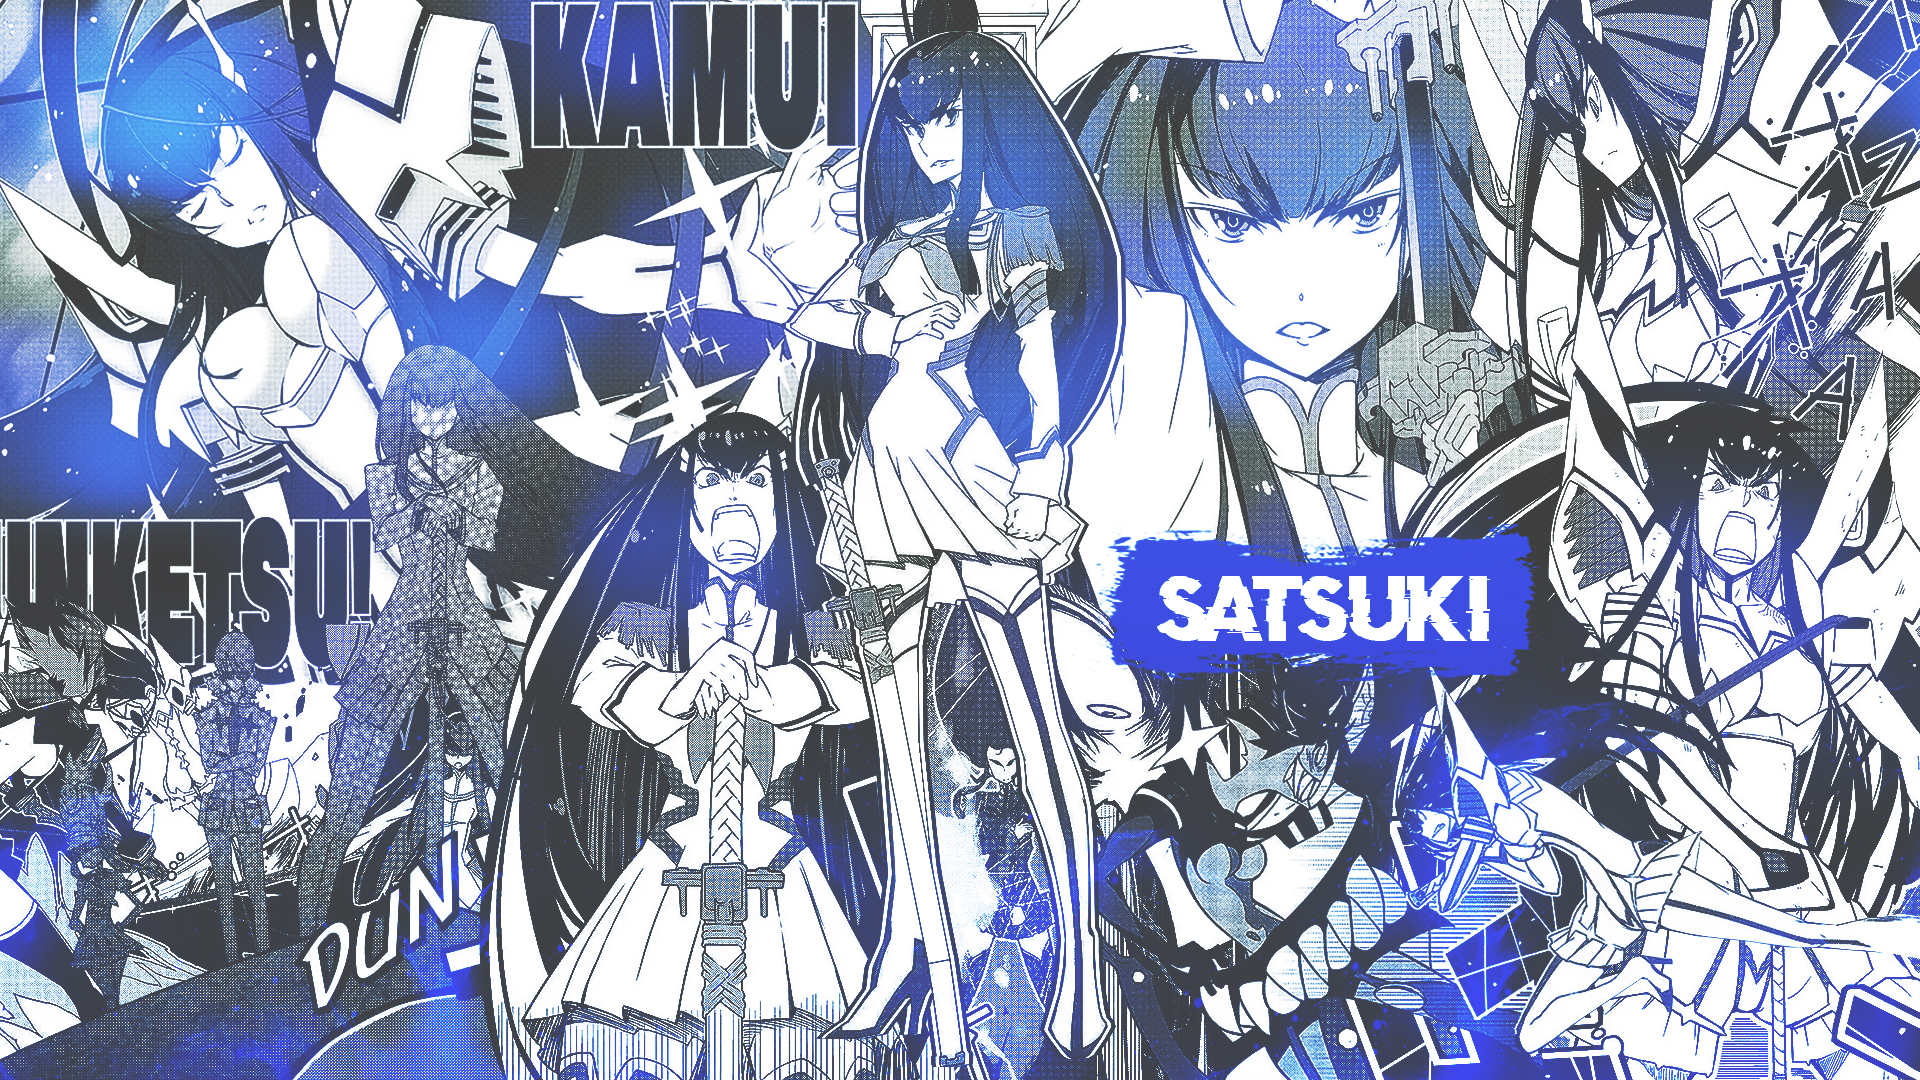 Manga DinocoZero Collage Kill La Kill Kiryuin Satsuki Anime Girls 1920x1080